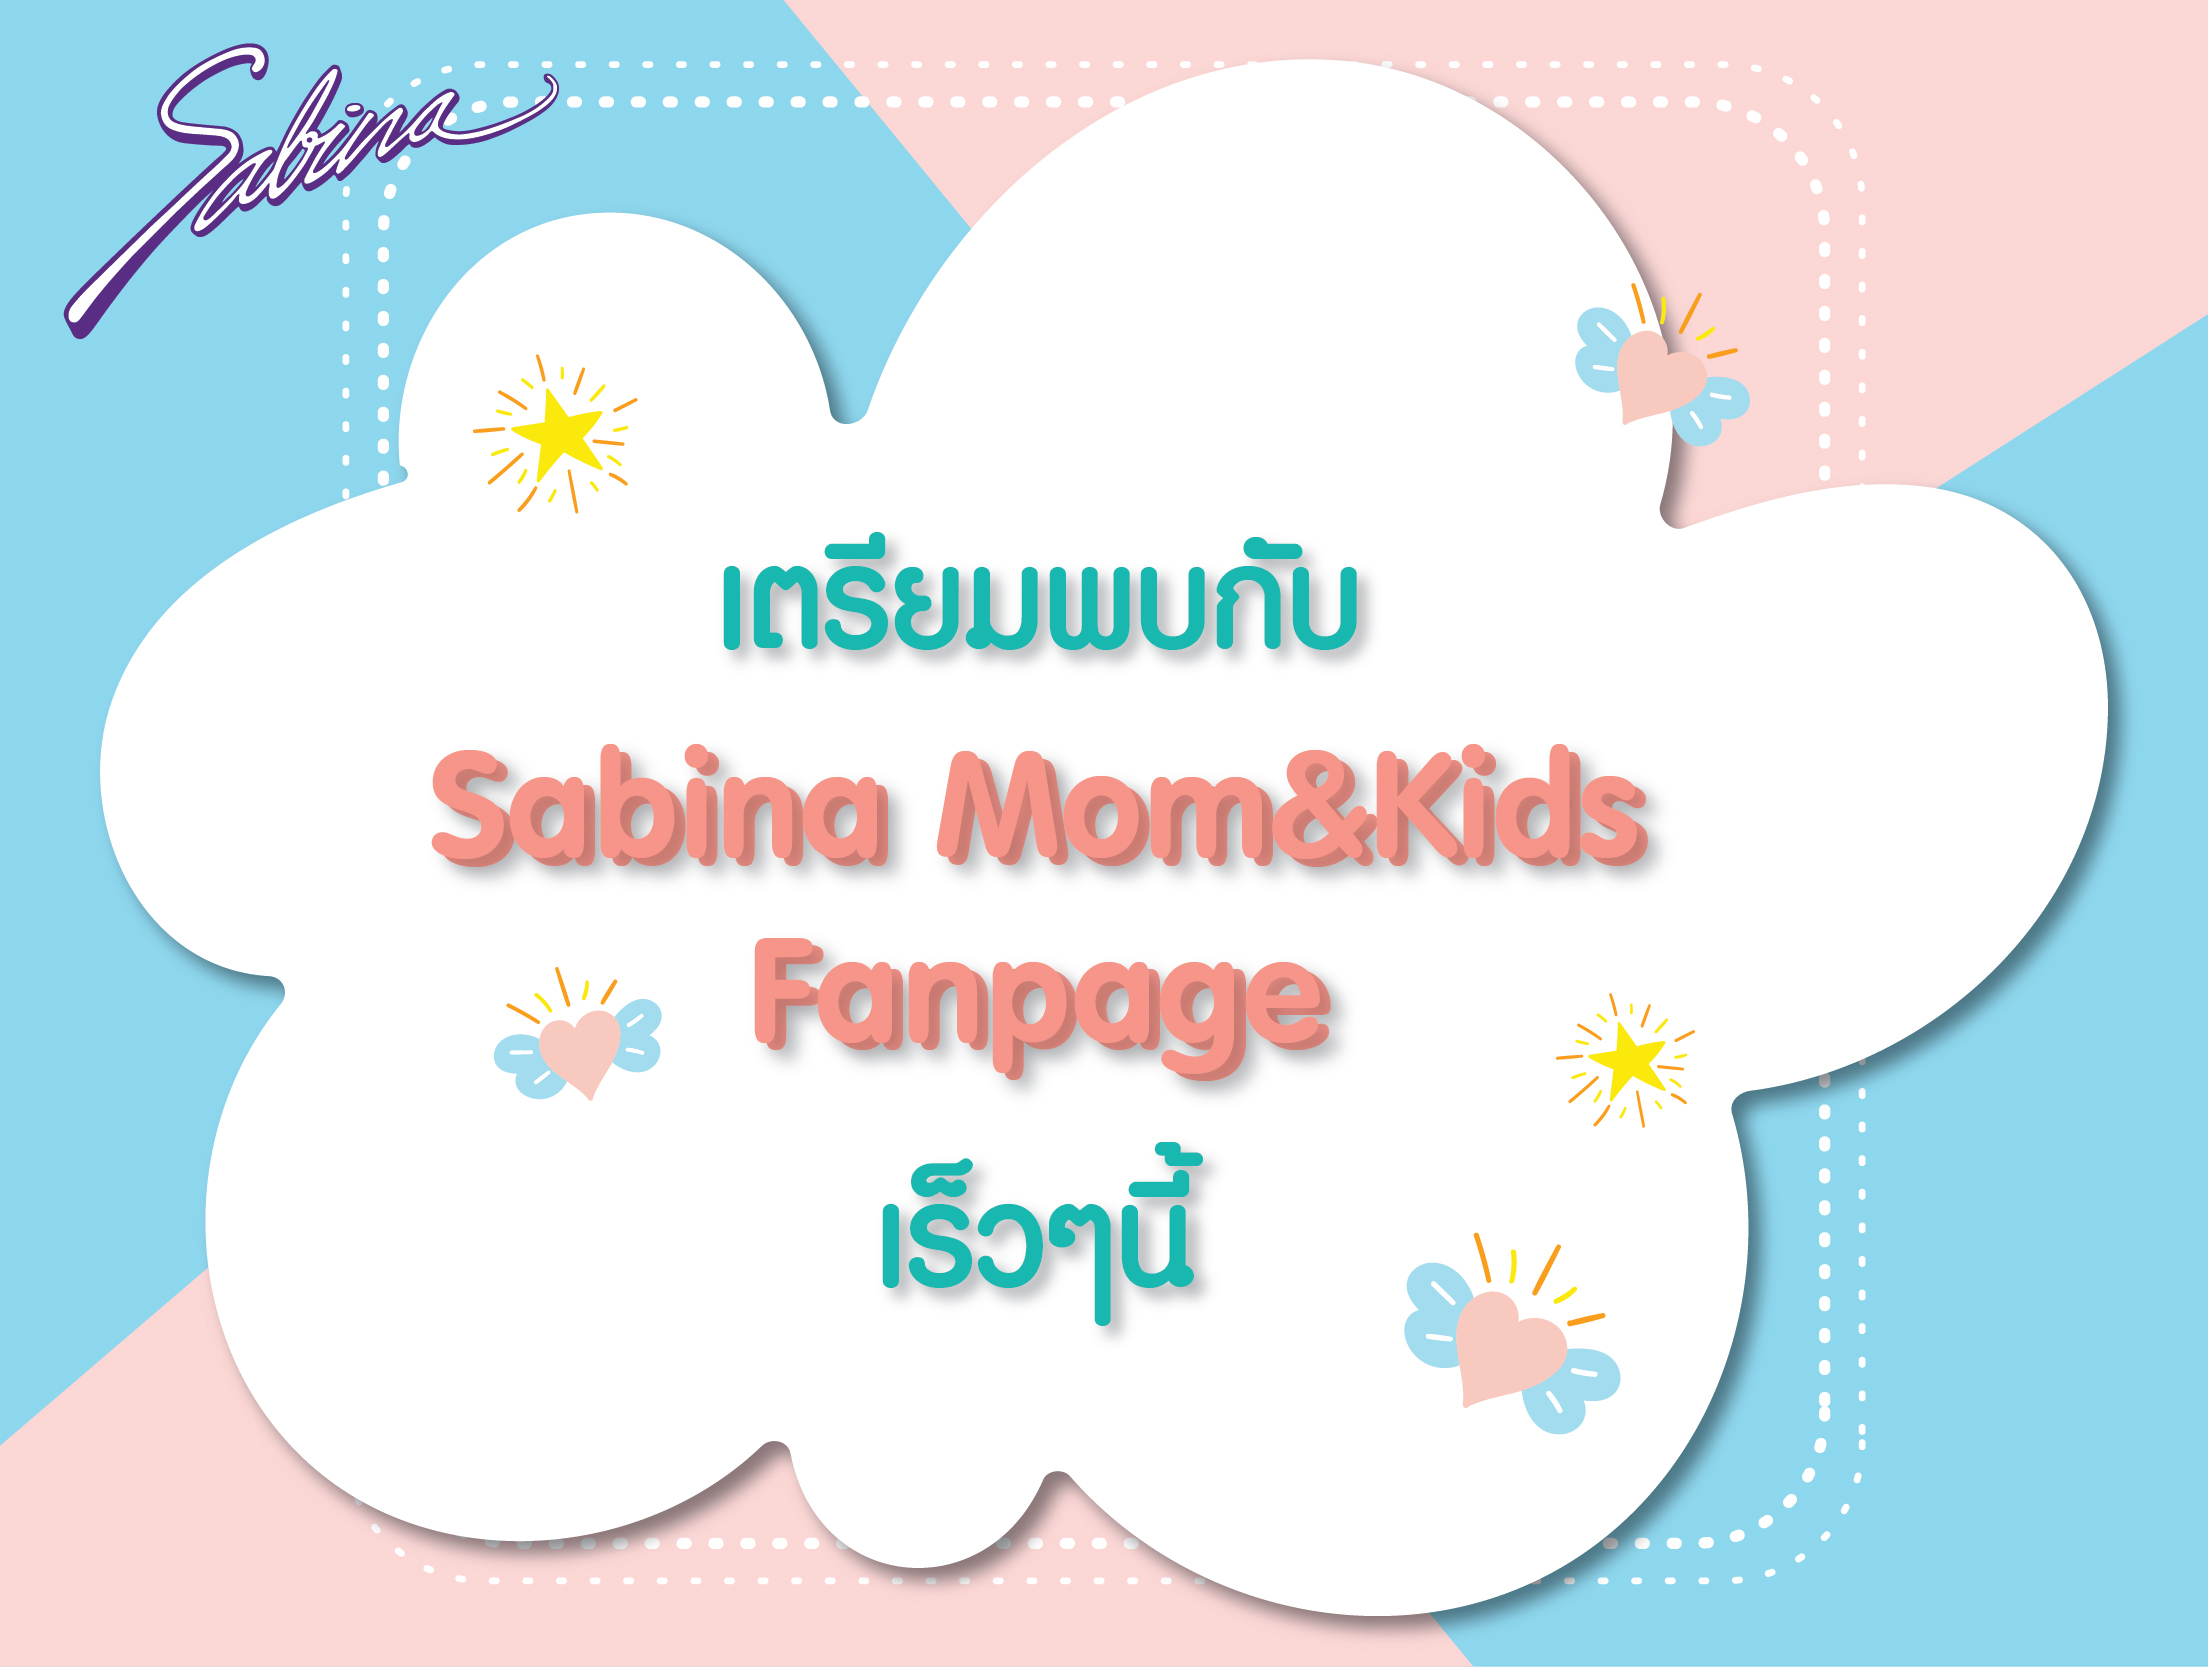 แจ้งเปลี่ยนแปลงชื่อ Facebook Sabinie Fanpage เป็น Facebook Sabina MOM&KIDS Fanpage